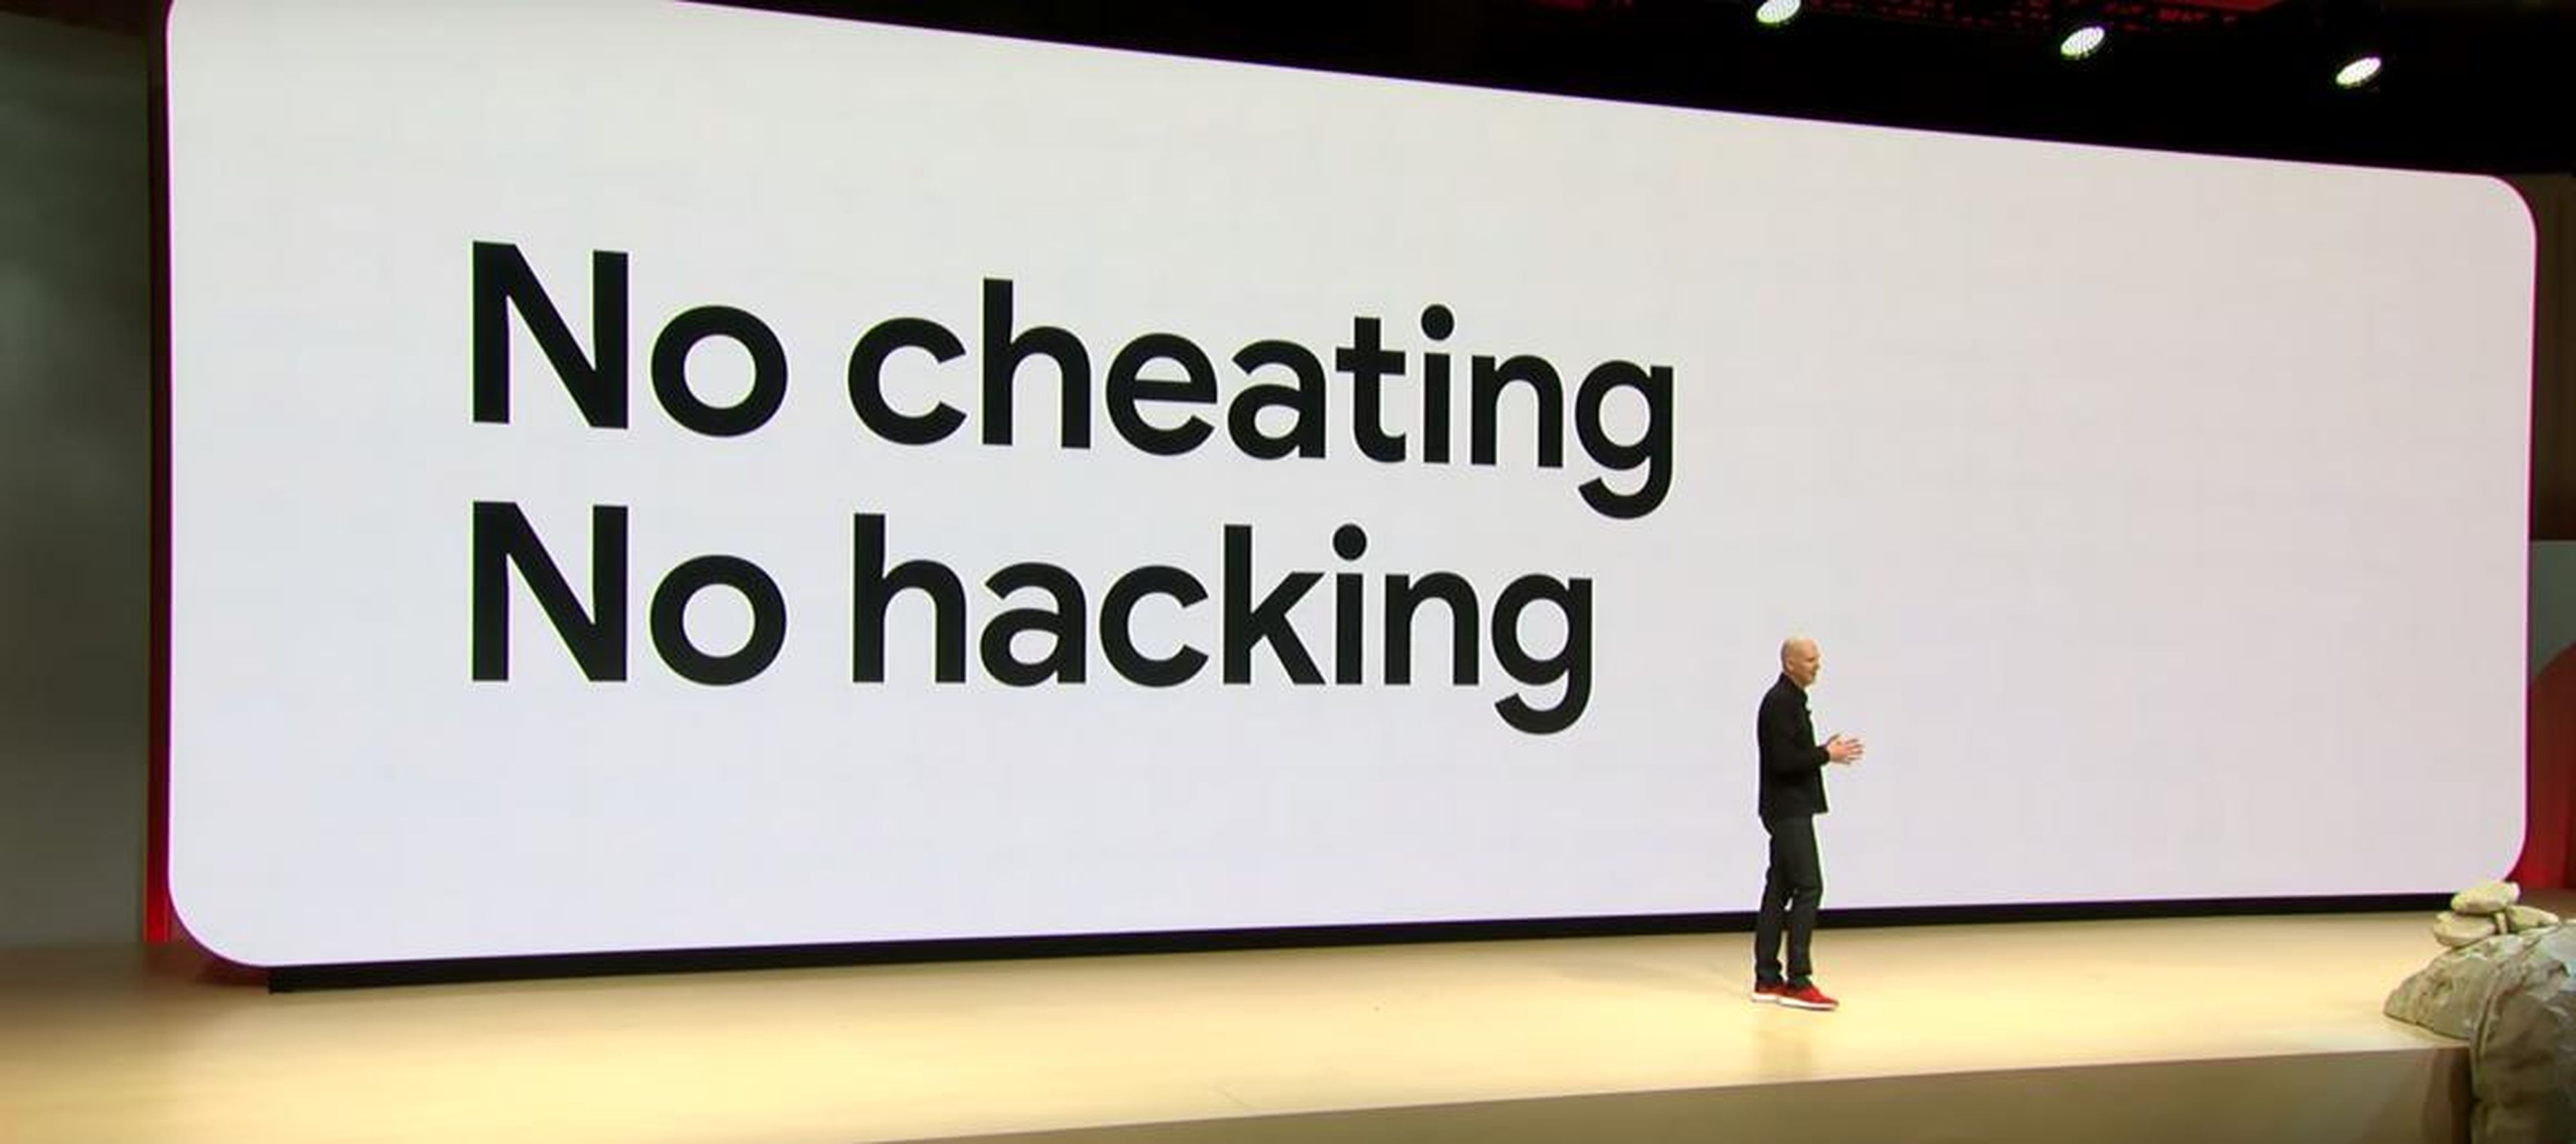 6. Google promete que no habrá tramposos ni hackeos